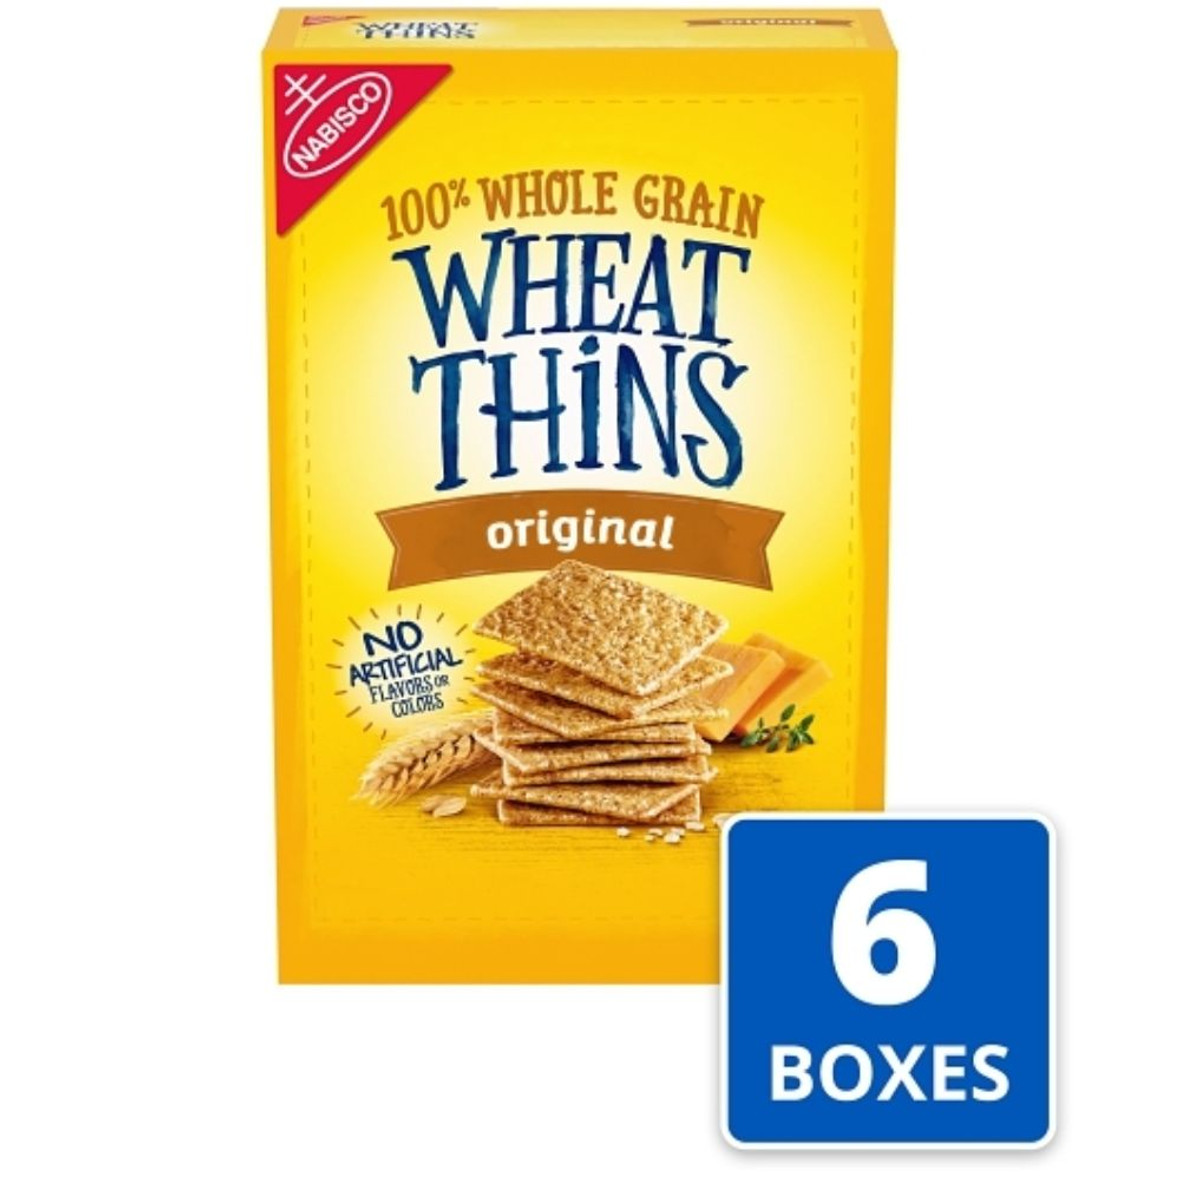 Wheat Thin Original Crackers